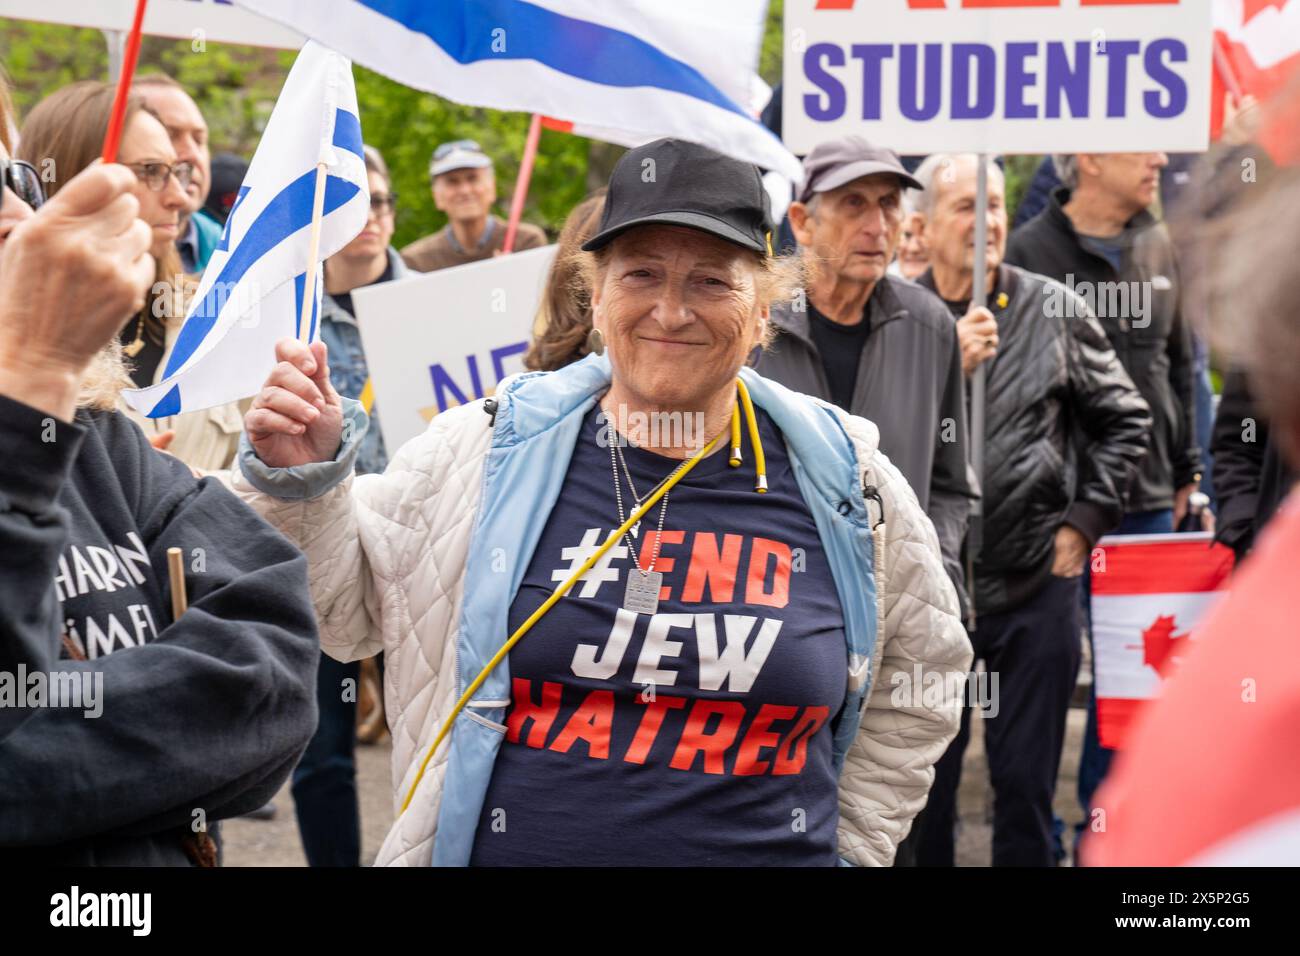 La donna che indossa una camicia scritta su '#End Jew Hatred' prende parte alla manifestazione contro l'odio. Gli studenti ebrei dei campus universitari in Nord America e in Europa hanno espresso preoccupazione per l'esistenza dell'antisemitismo da parte di gruppi studenteschi filo-palestinesi. Questi gruppi spesso mostrano sentimenti anti-israeliani e anti-sionisti attraverso cartelli e retorica, talvolta anche sostenendo la distruzione dello Stato di Israele. Tali azioni contribuiscono a un ambiente in cui gli studenti ebrei si sentono presi di mira ed emarginati, ignorando i loro legittimi legami storici con la loro patria. Foto Stock